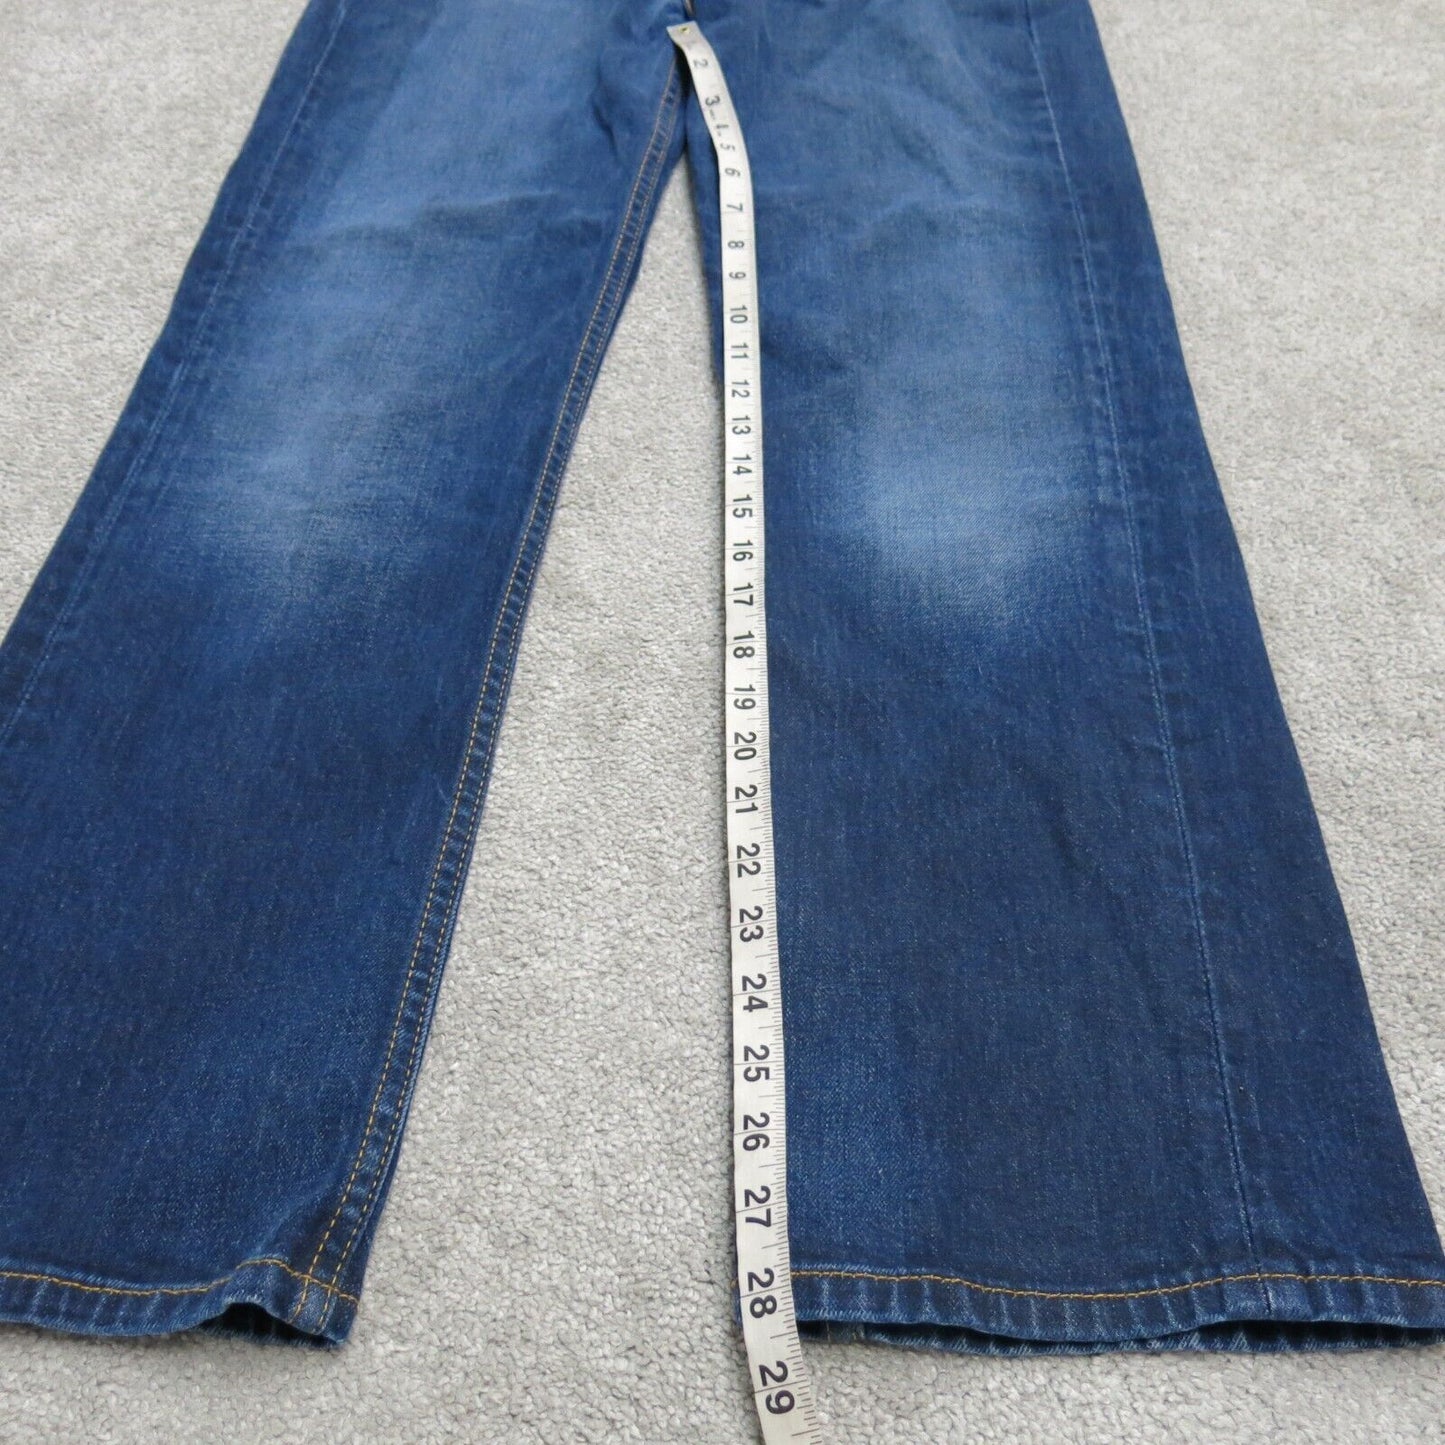 Levis 510 Mens Straight Leg Jeans Denim Stretch Low Rise Blue Size W33XL30